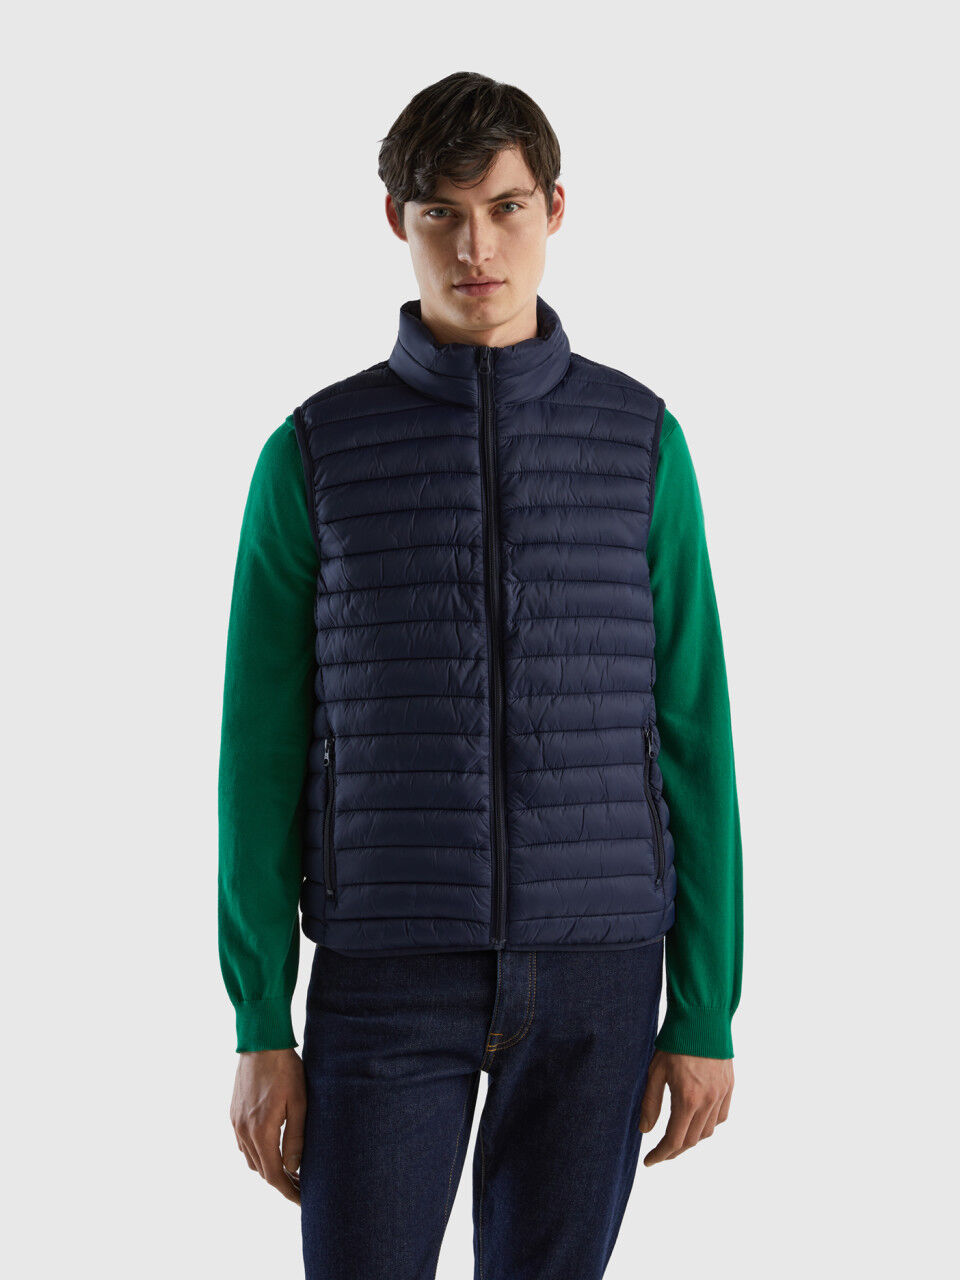 beweging elk Voel me slecht Men's Coats and Jackets Collection 2023 | Benetton